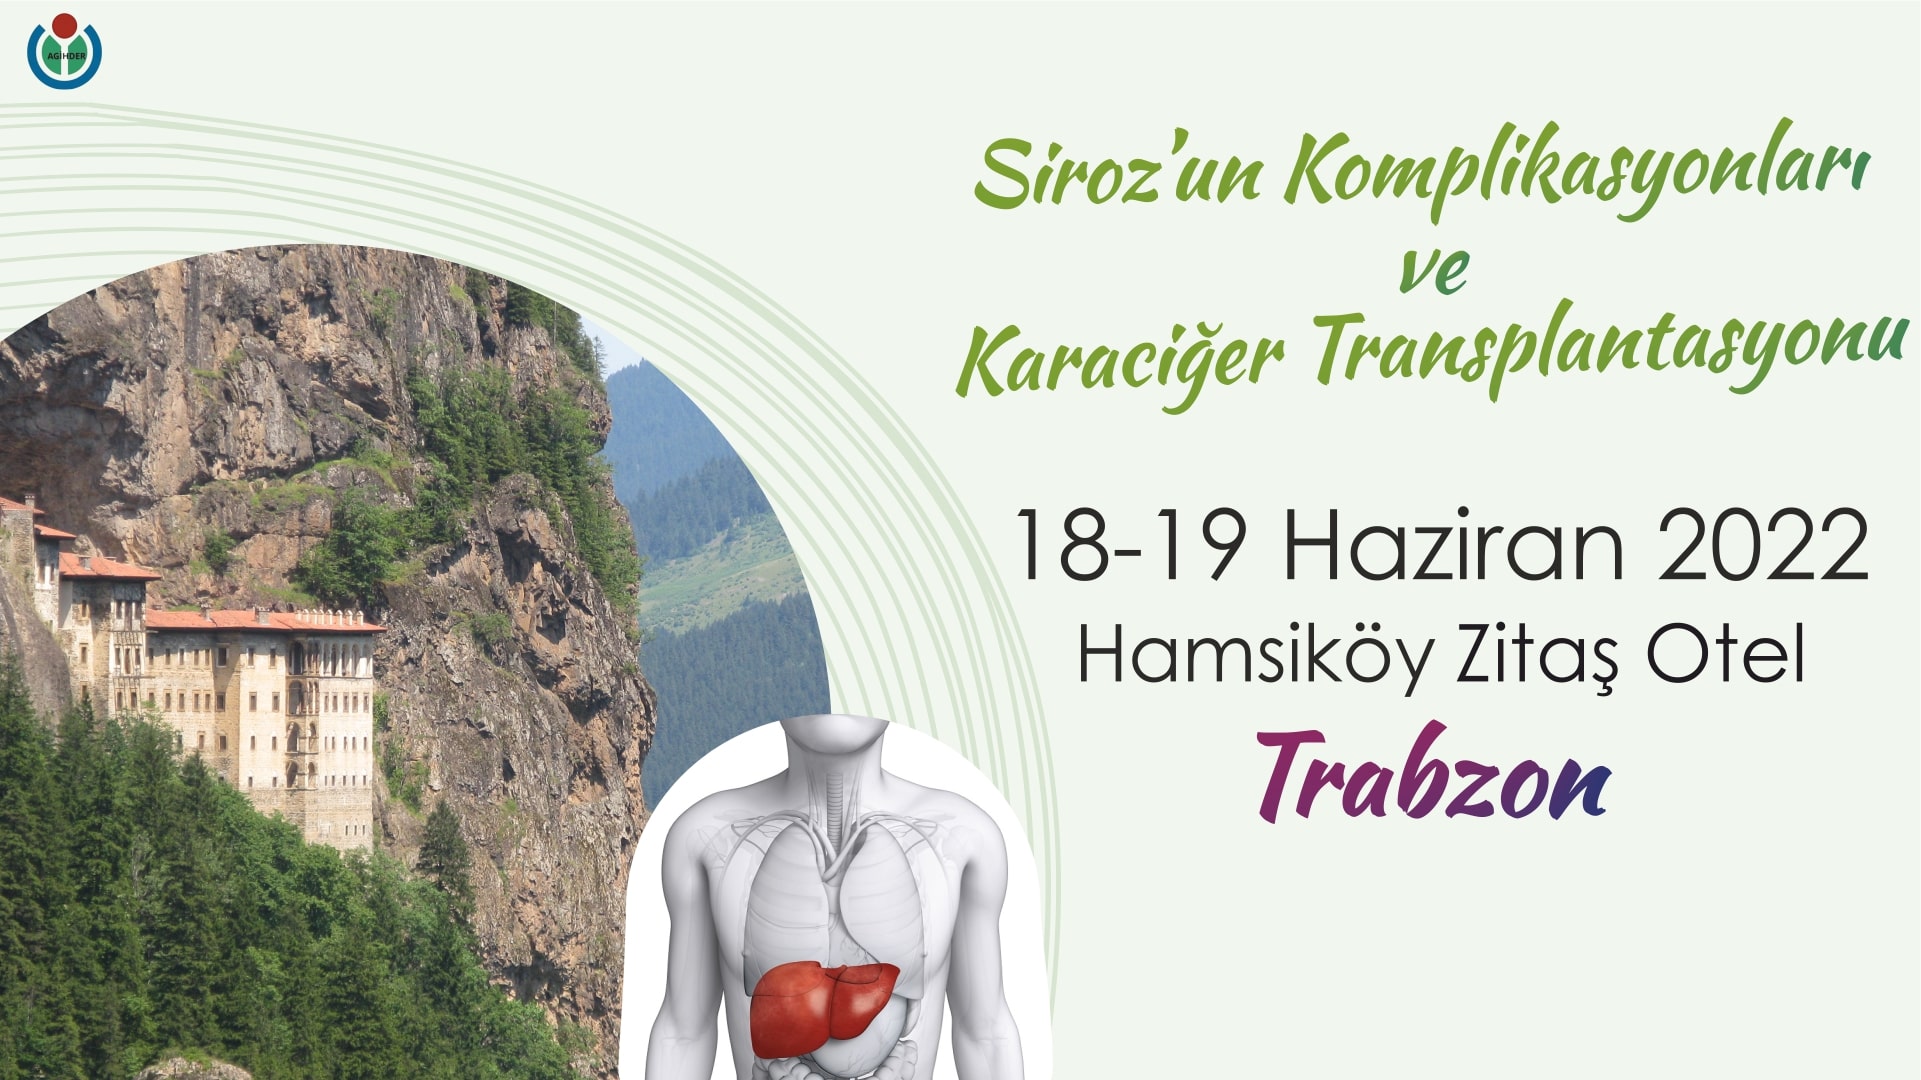 Siroz'un Komplikasyonları ve Karaciğer Transplantasyonu